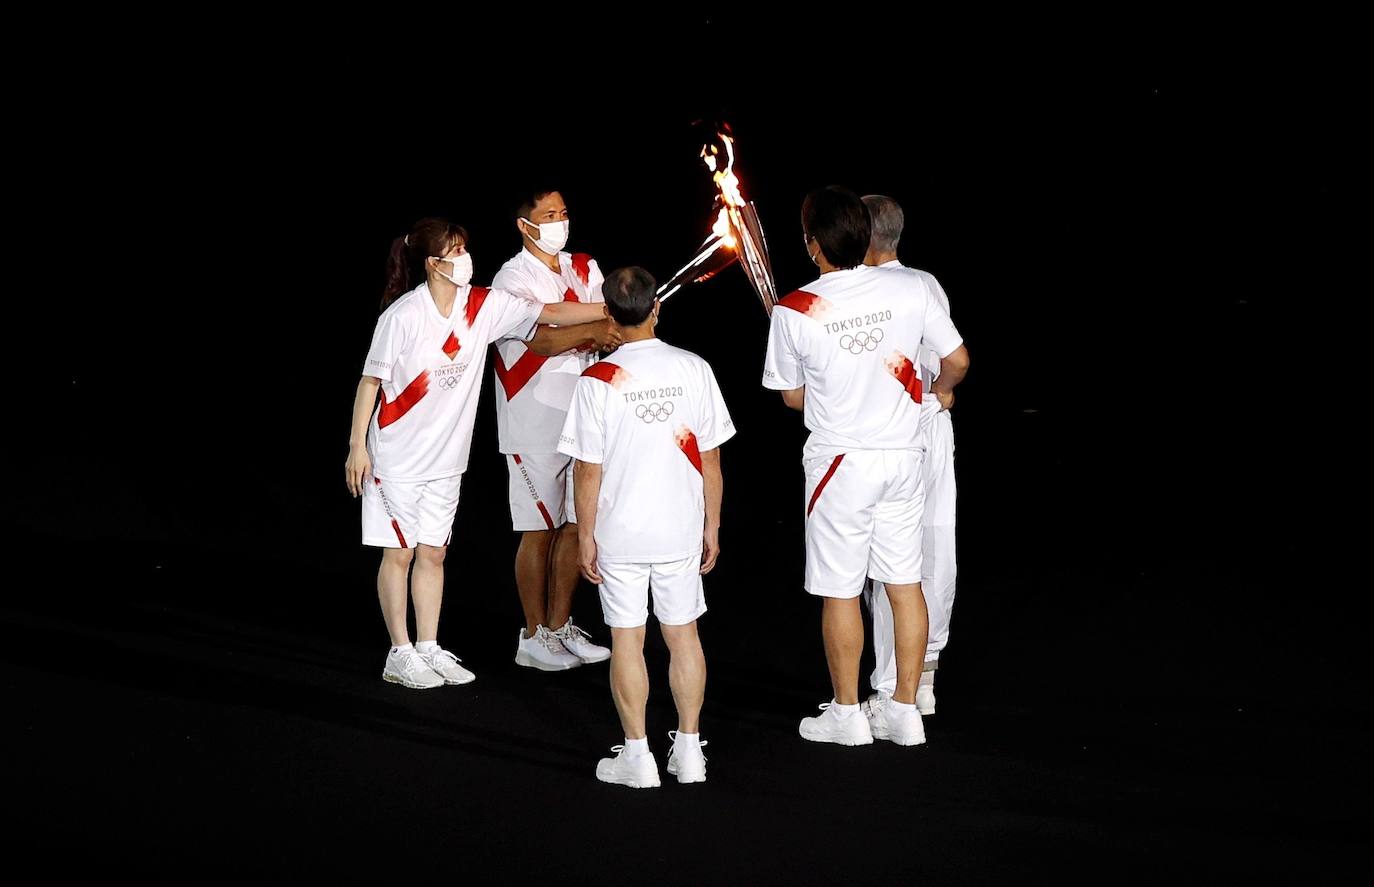 La antorcha olímpica cambia de manos durante la ceremonia de inauguración de los Juegos de Tokio 2020.